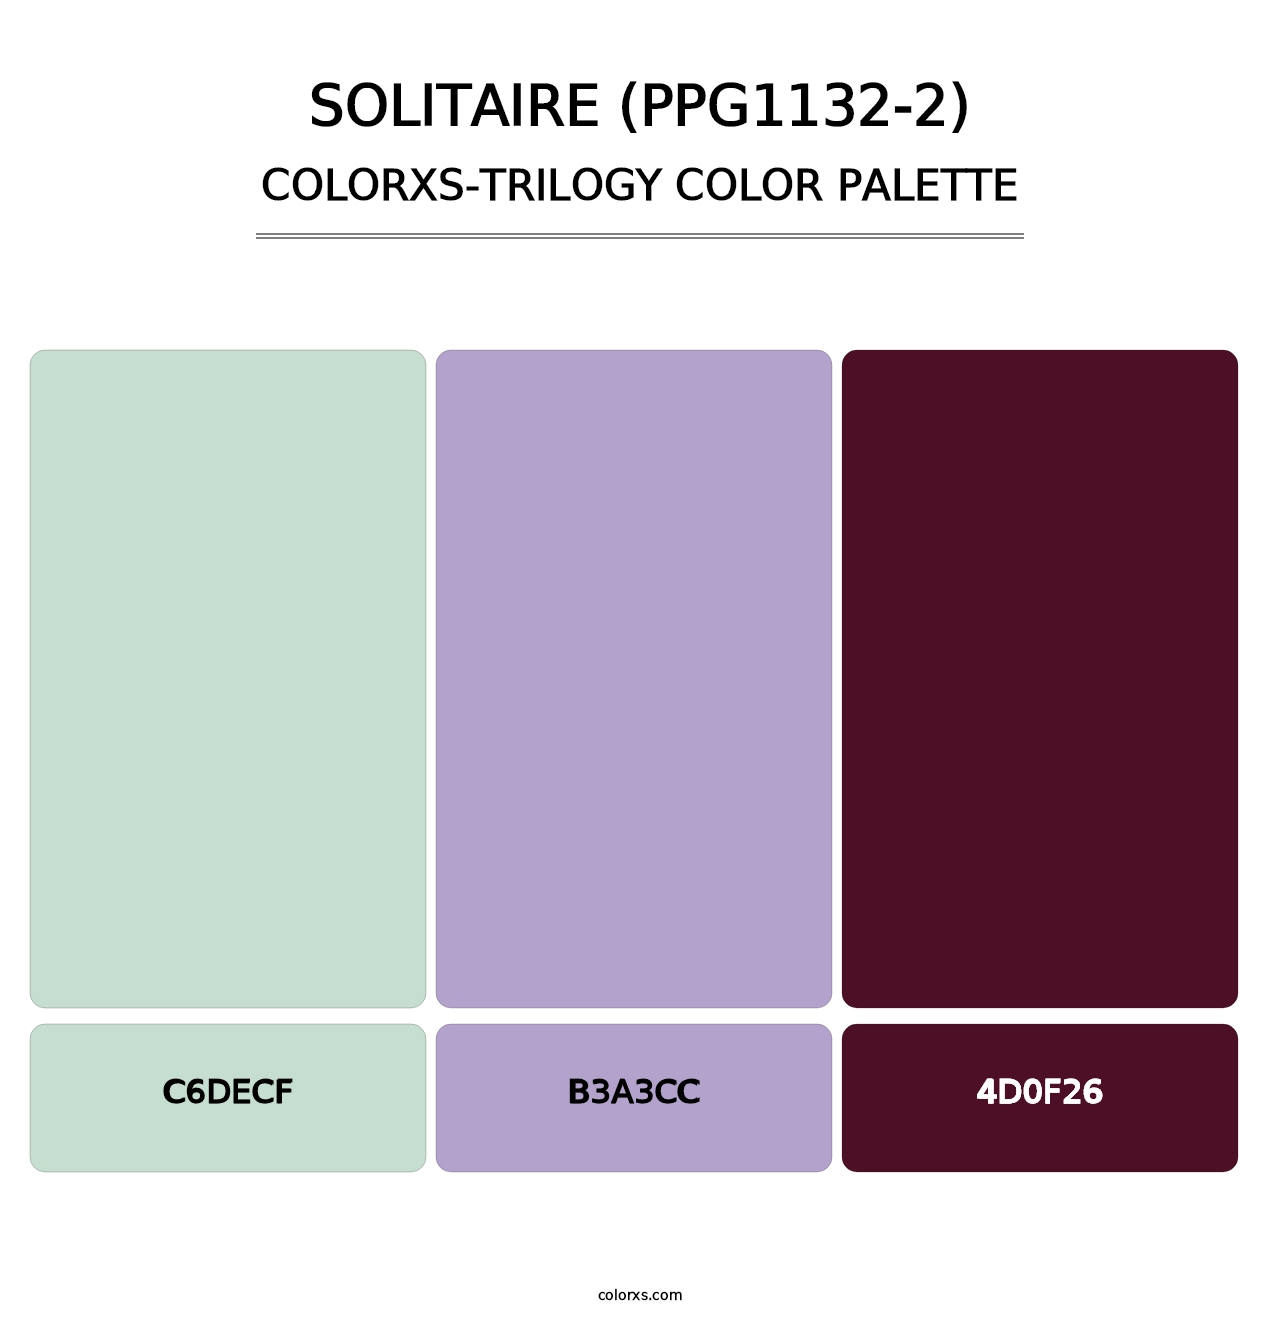 Solitaire (PPG1132-2) - Colorxs Trilogy Palette